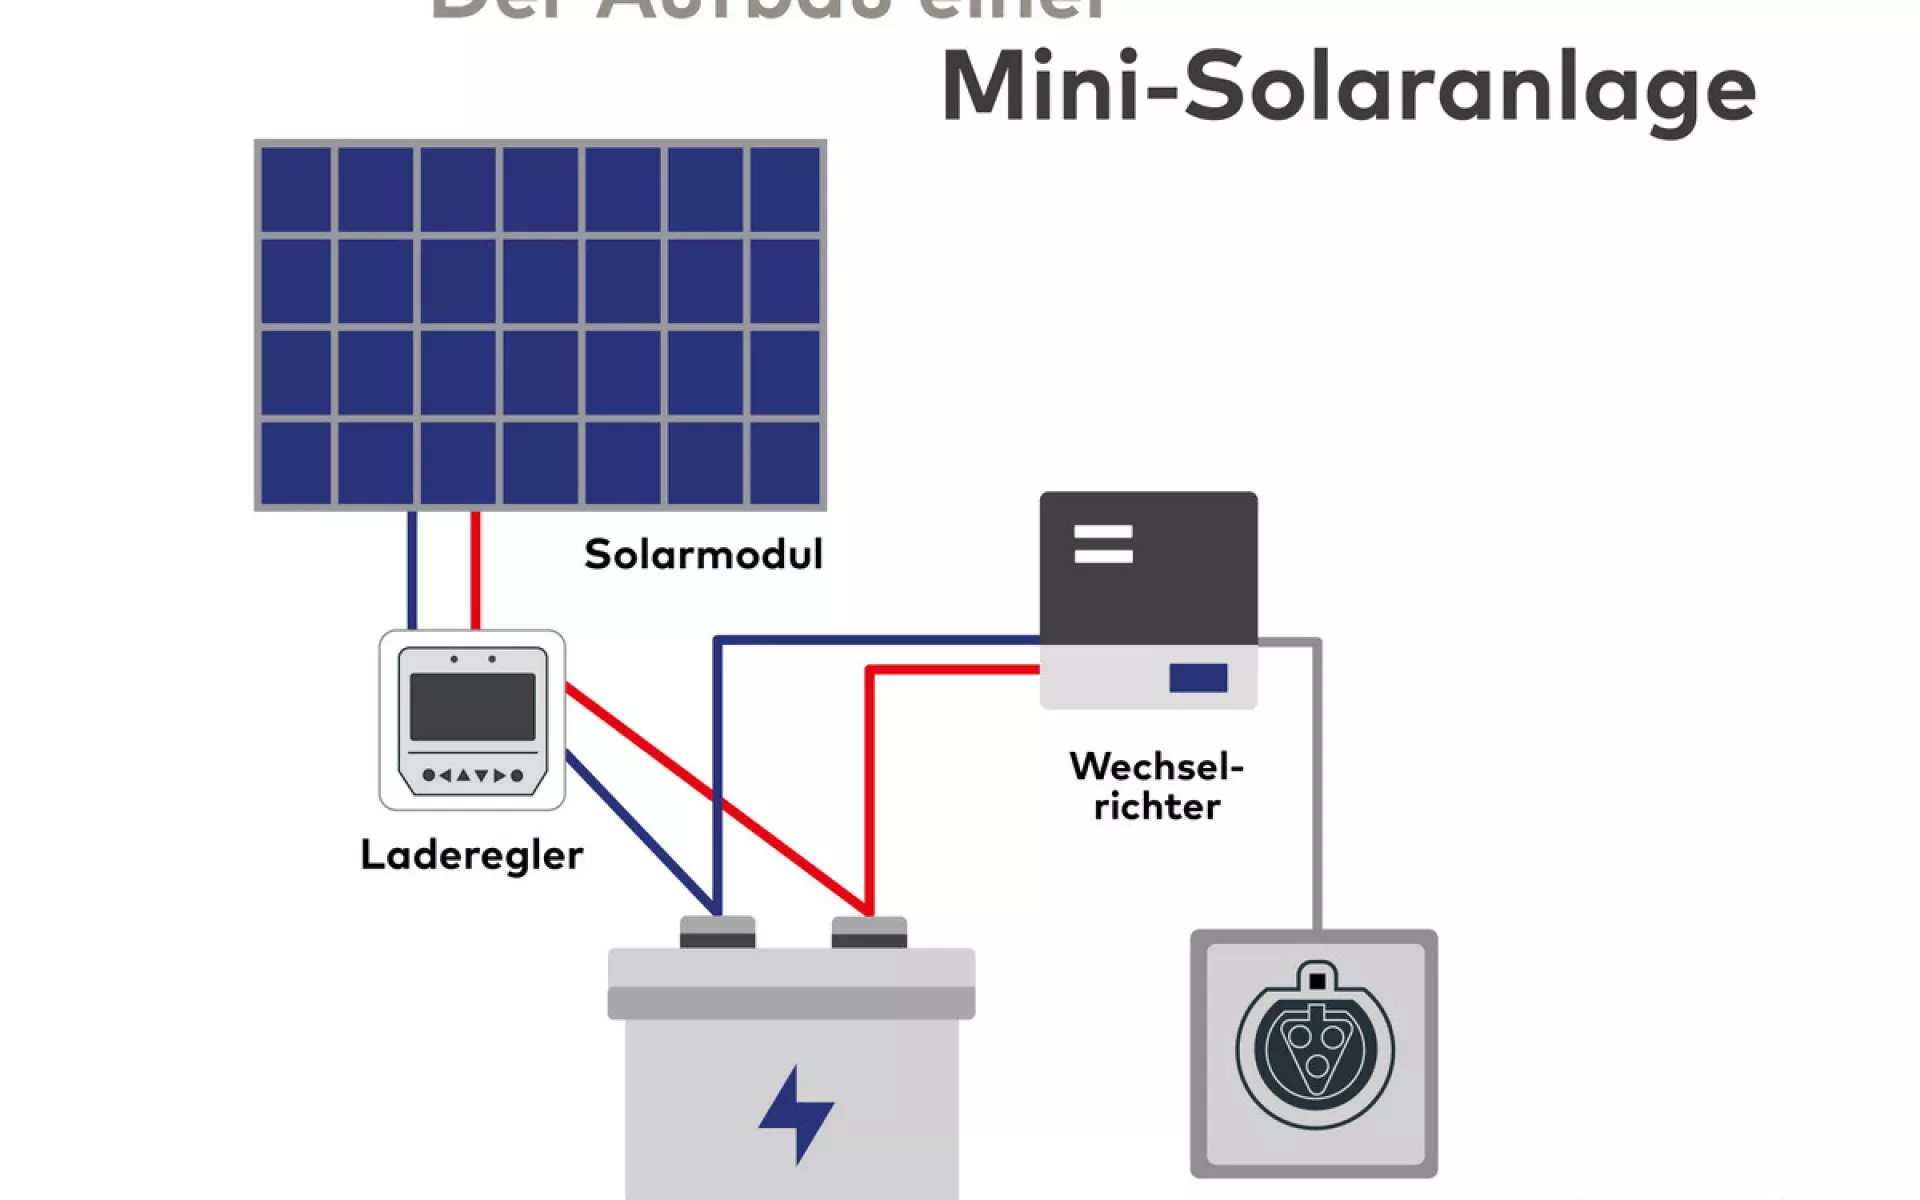 Die Grafik zeigt eine Mini-Solaranlage mit wichtigen Bauteilen.